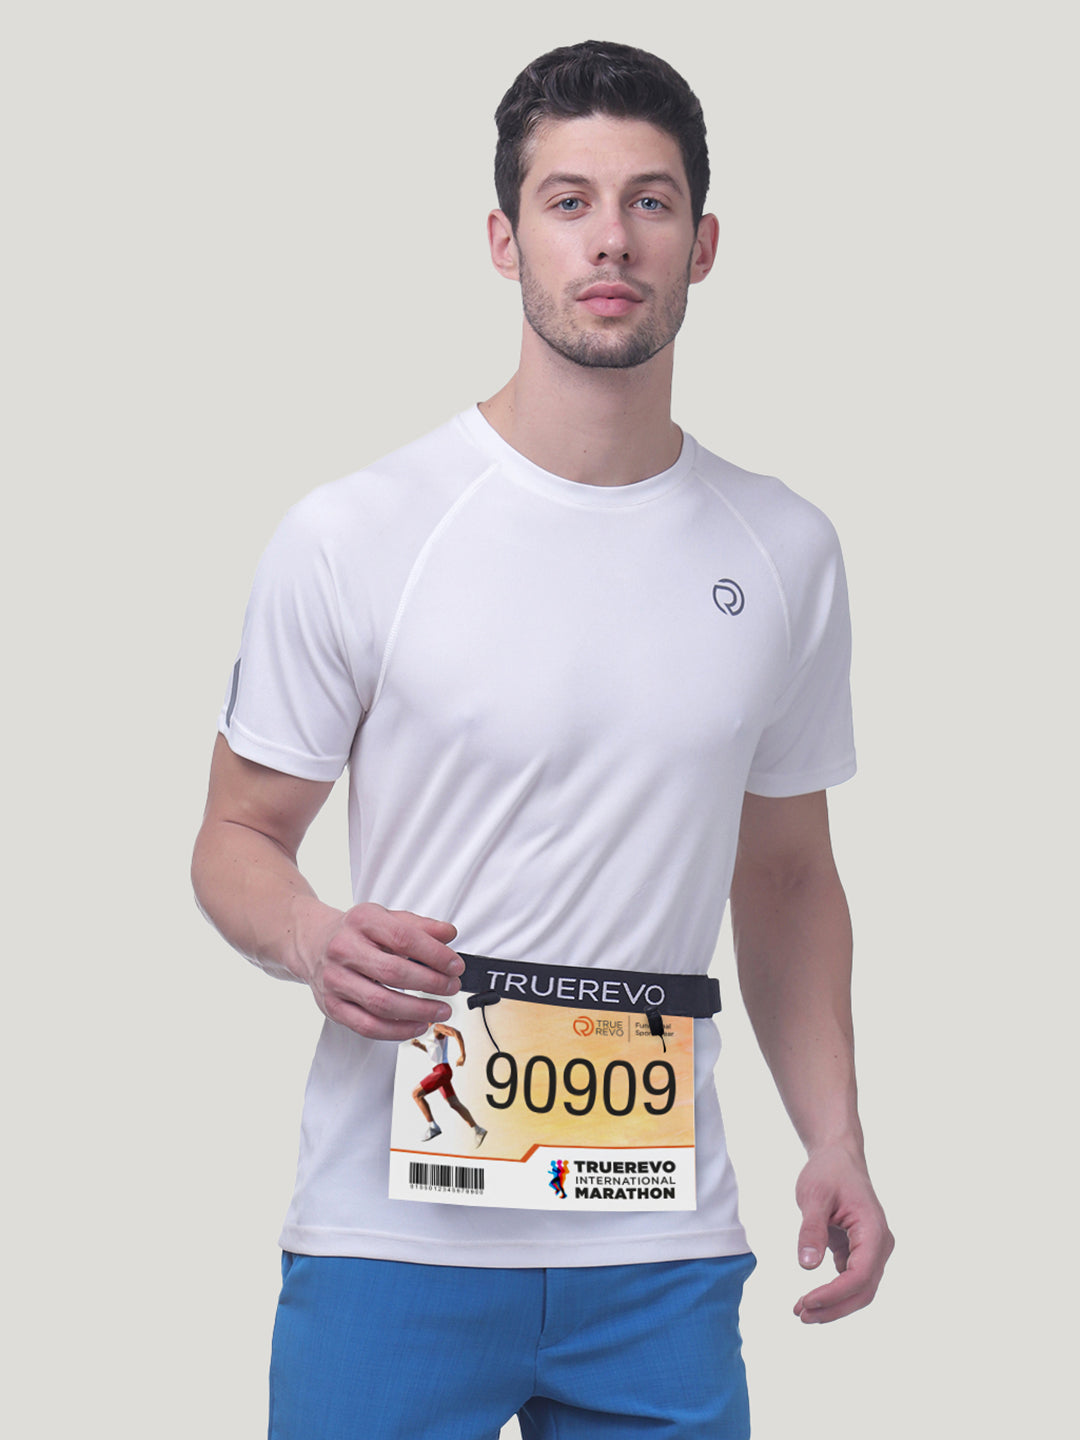 Race Number Bib Holder Belt with 4 loops for Marathons & Tri-athlons - Black